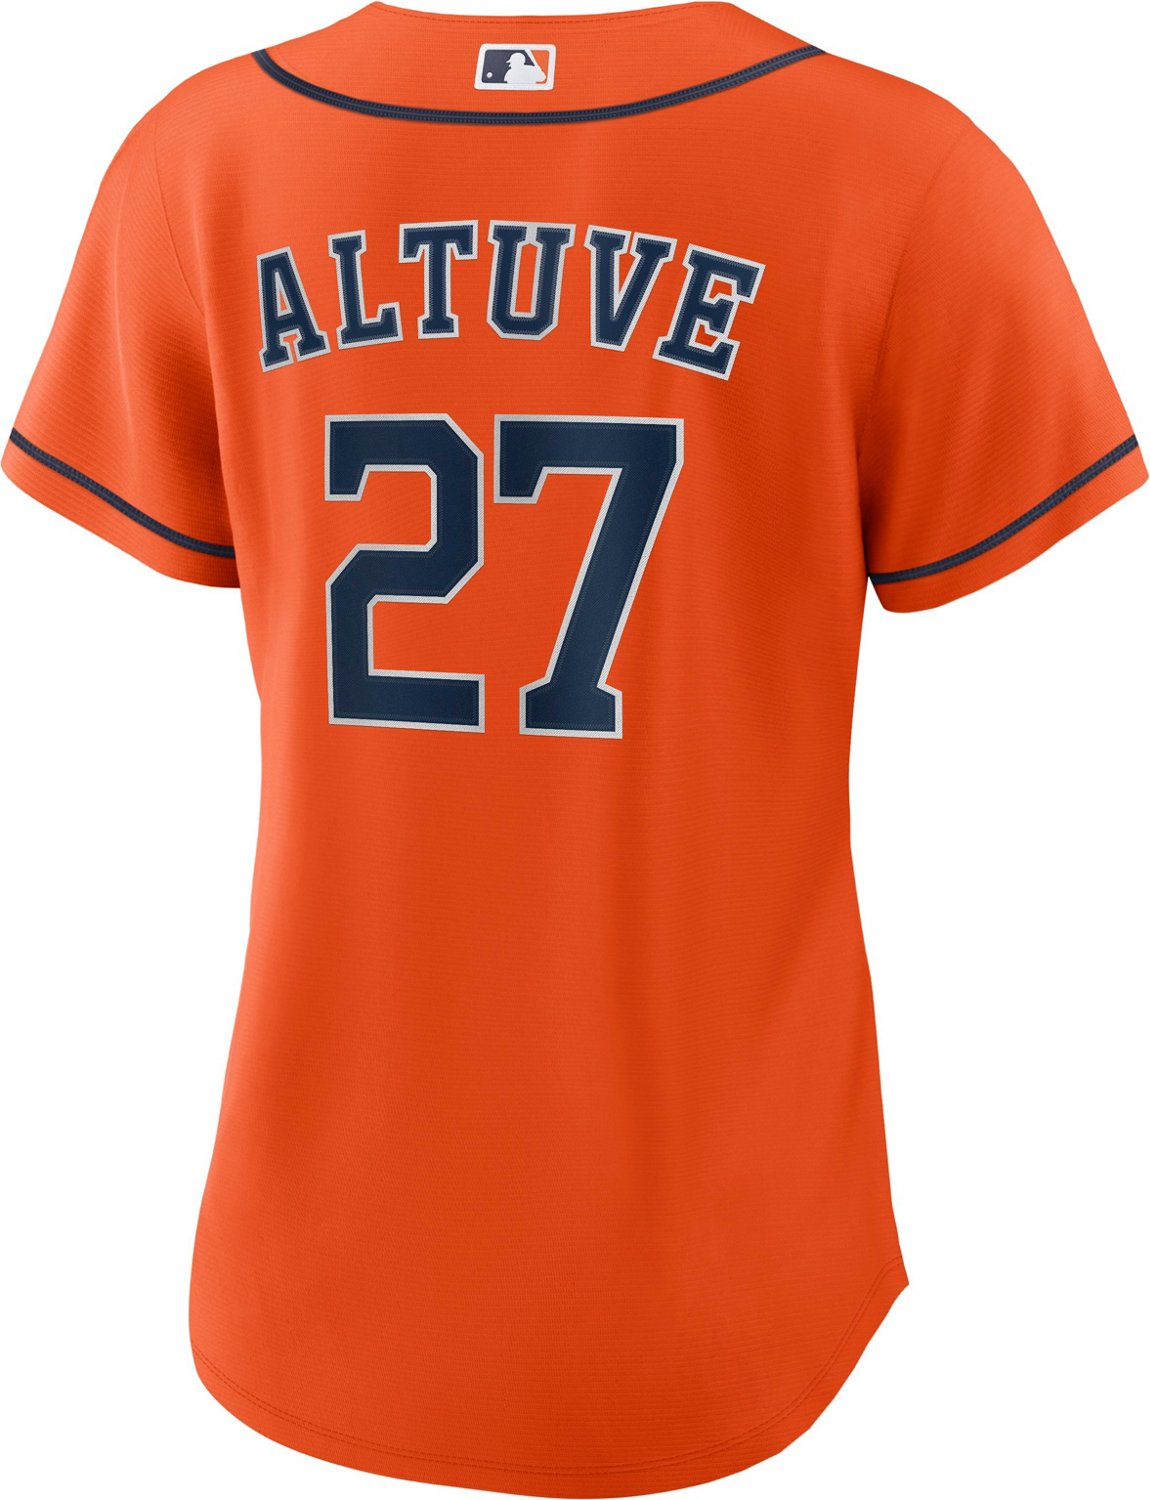  Outerstuff Jose Altuve Houston Astros #27 Jersey